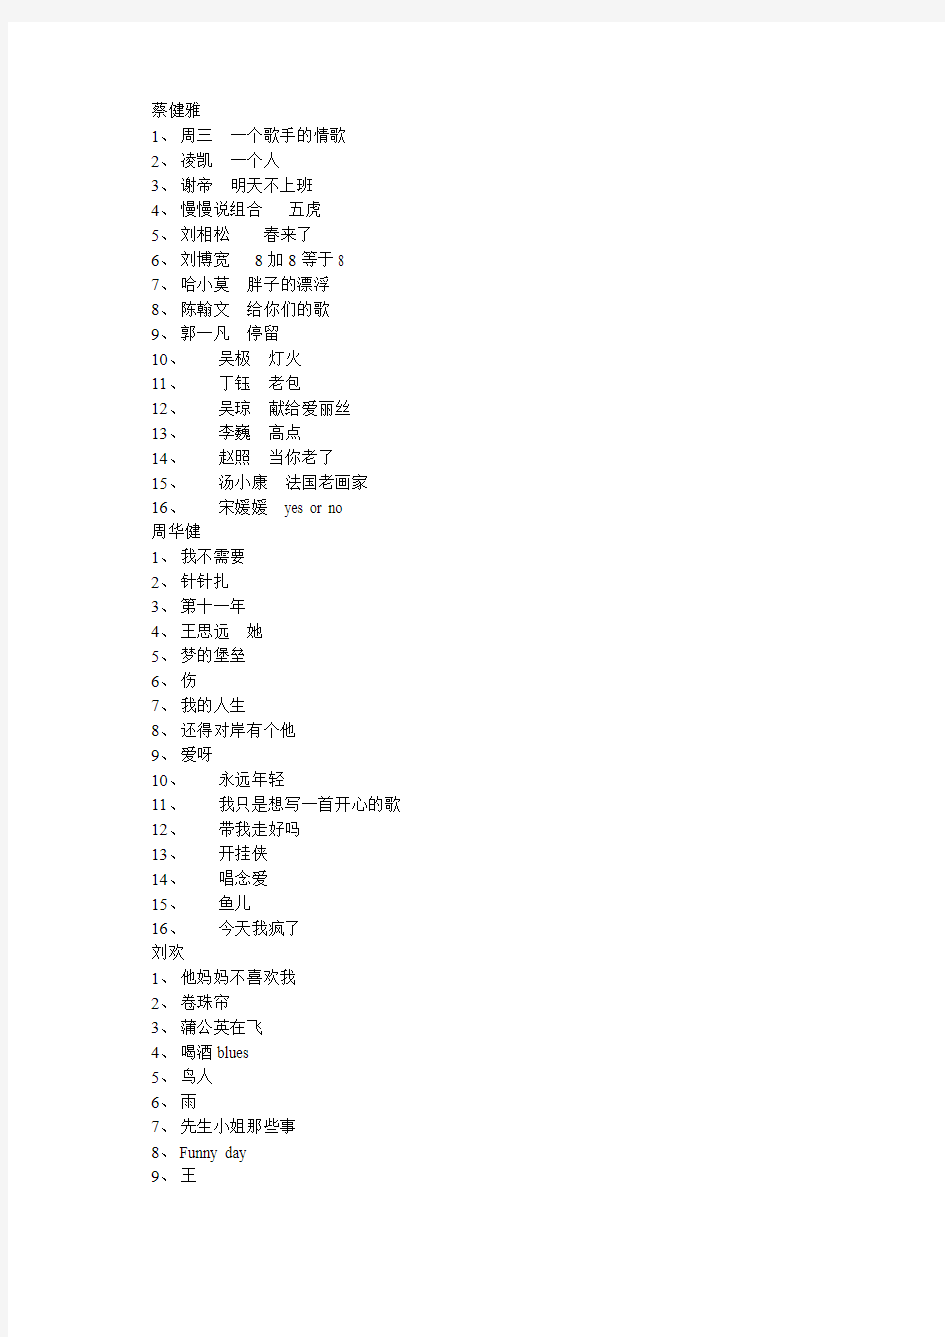 2014中国好歌曲四位导师16首收录的歌曲